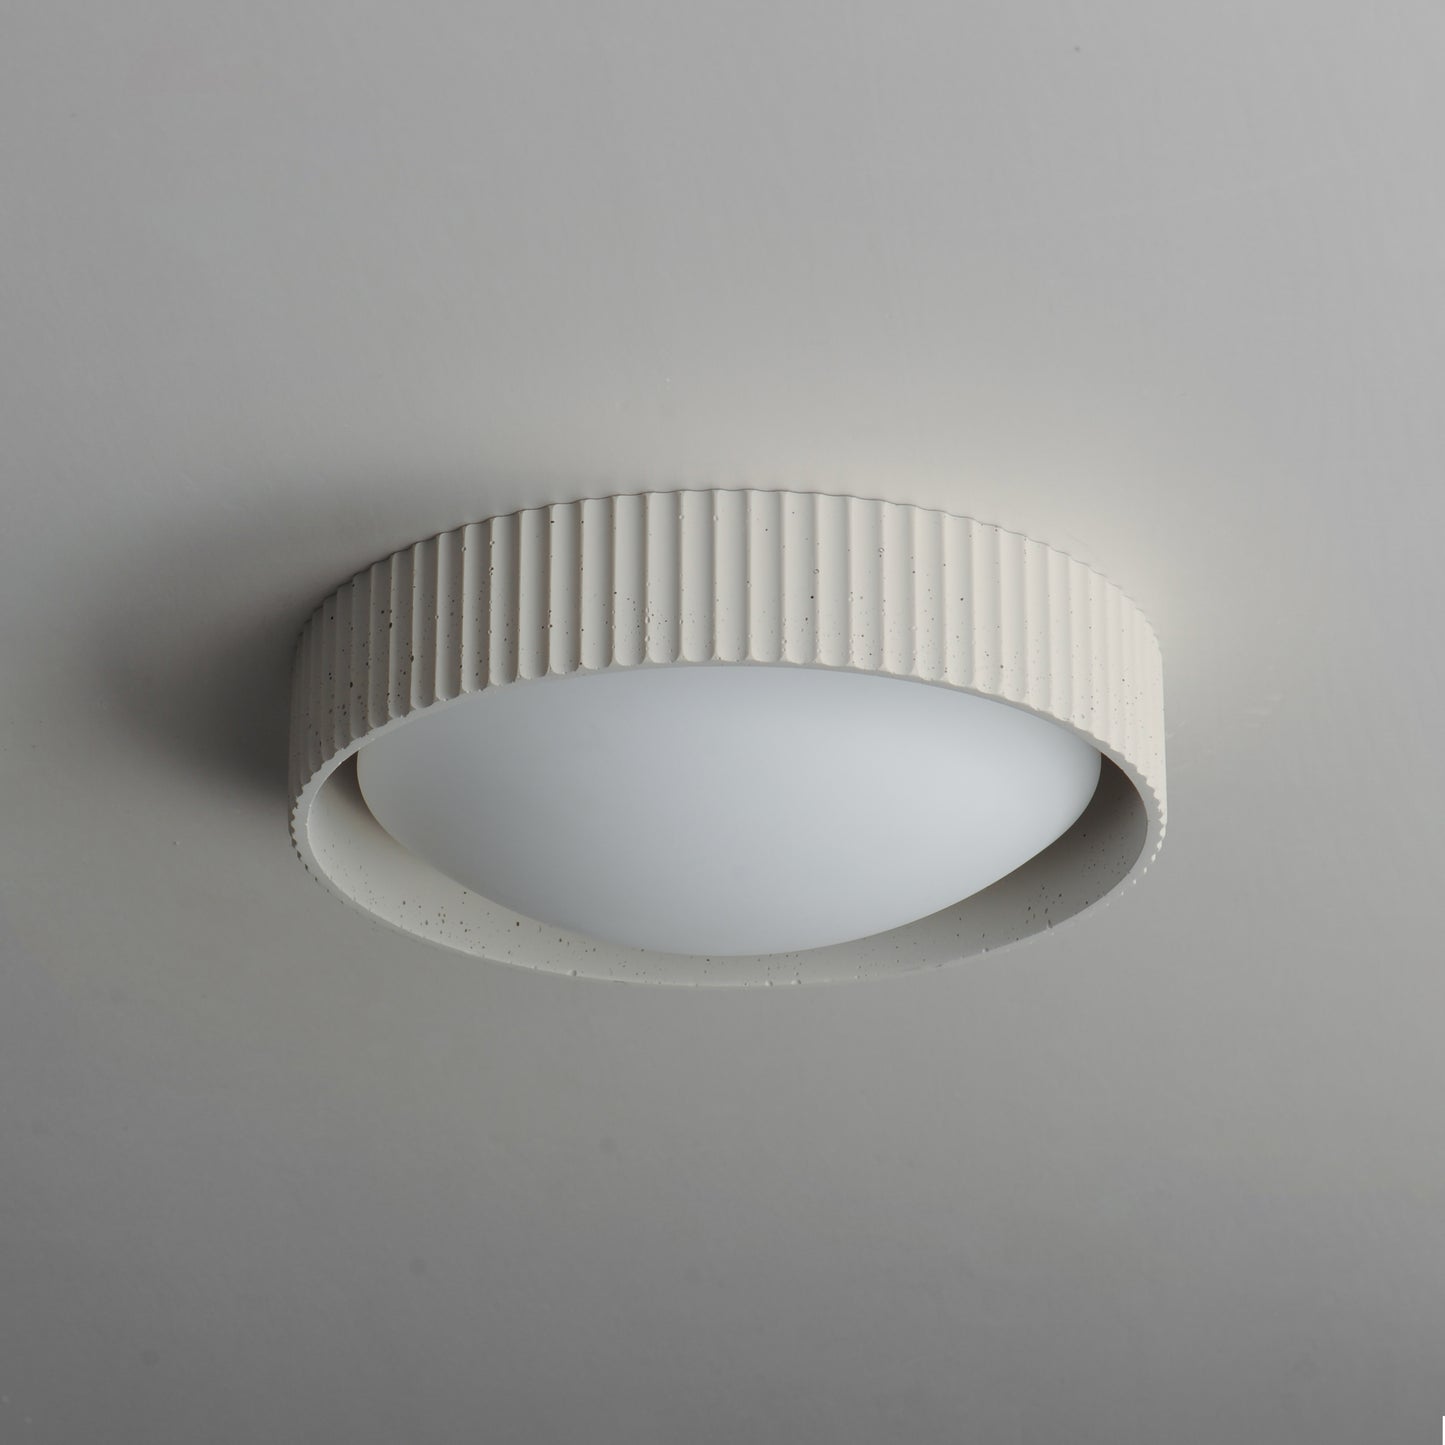 E25051-CHK - Souffle 14" Flush Mount Ceiling Light - Chaulk White